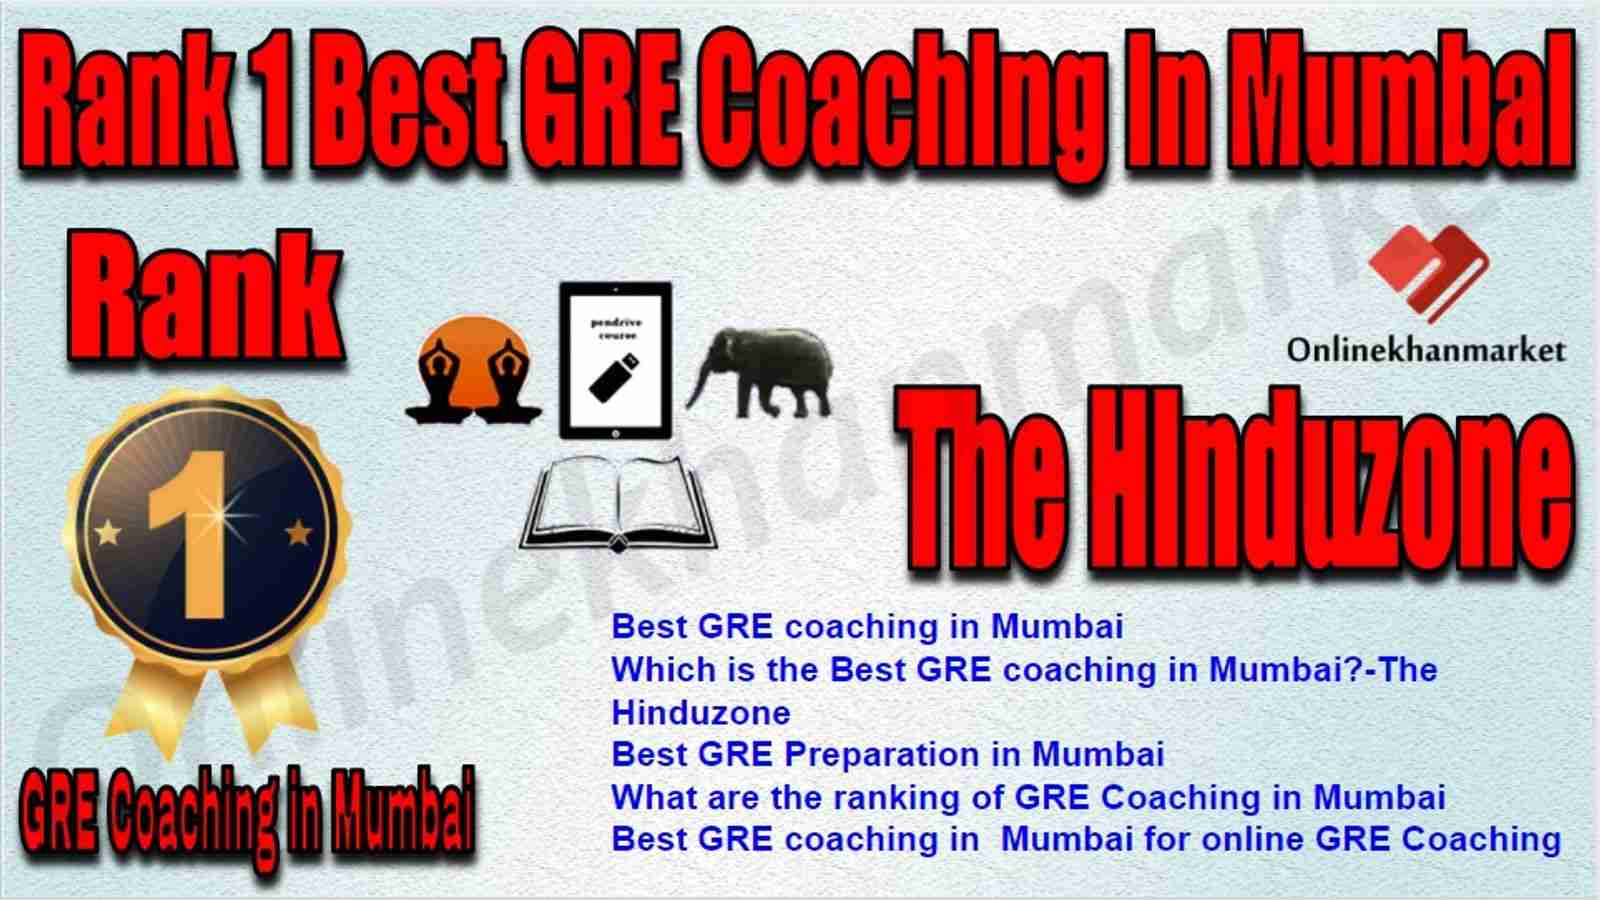 Rank 1 Best GRE Coaching in Mumbai